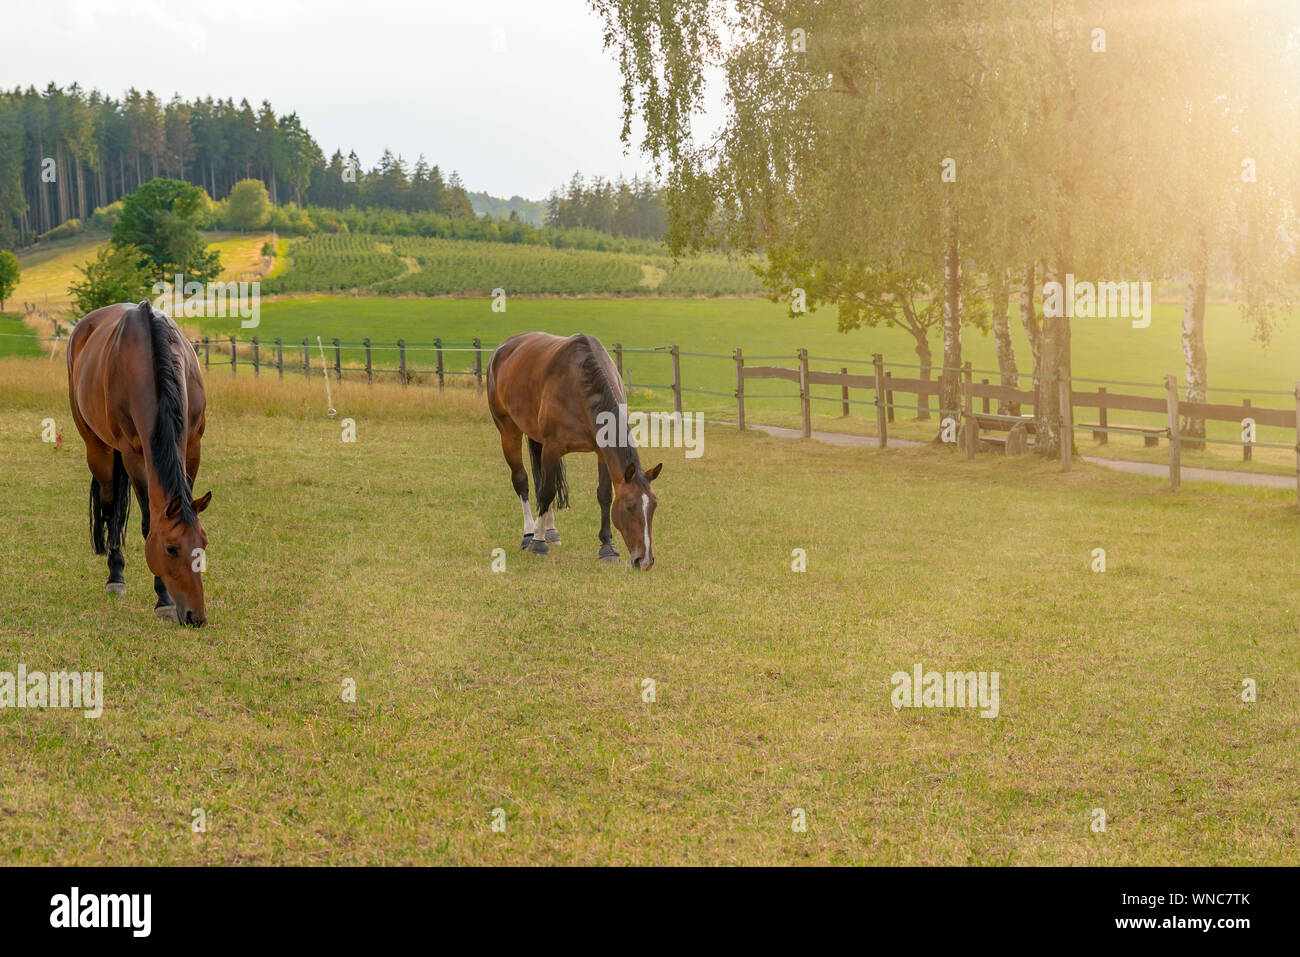 Deux chevaux, un lourd de Thuringe saxonne sang chaud et un cheval de Westphalie sont debout sur l'herbe et manger. C'est l'été, l'herbe est sèche et le su Banque D'Images